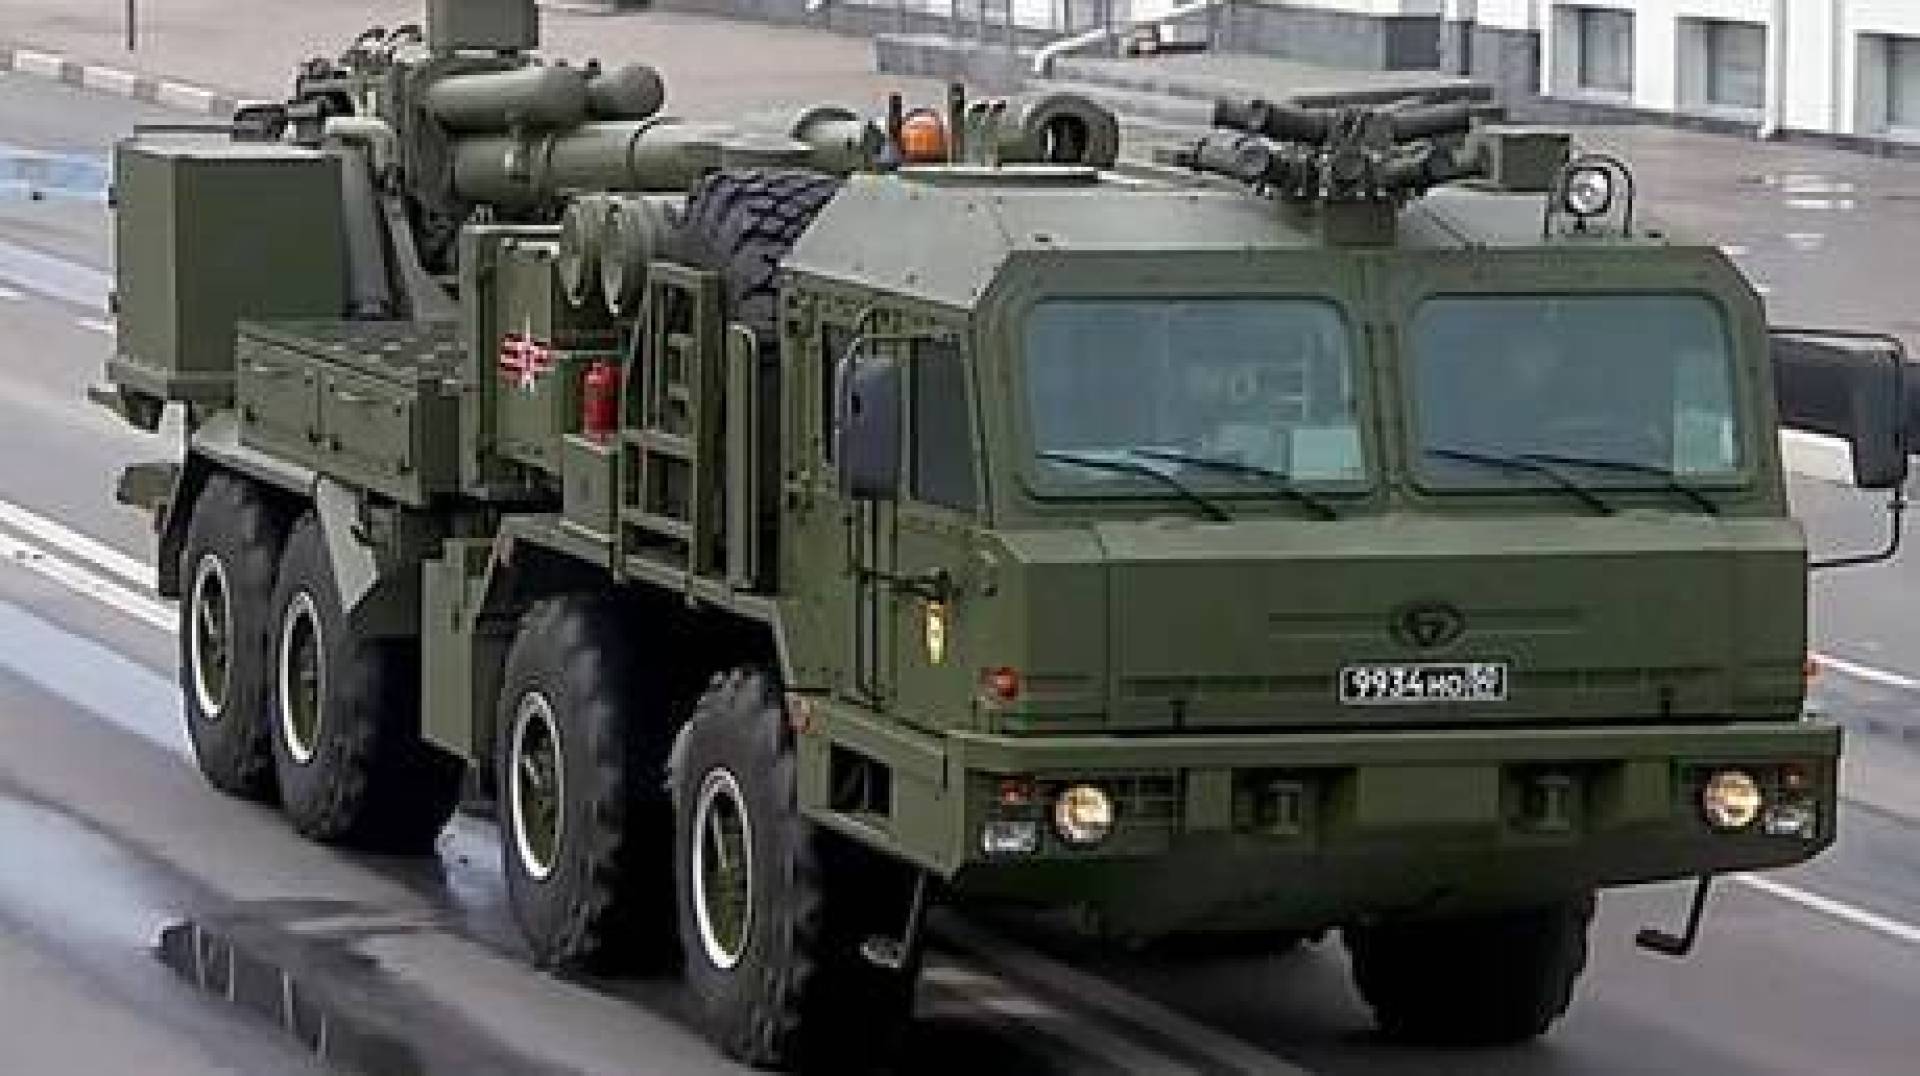 مدفع 'مالفا' المدولب: تقنية قوية تحدث ثورة في القوات الروسية